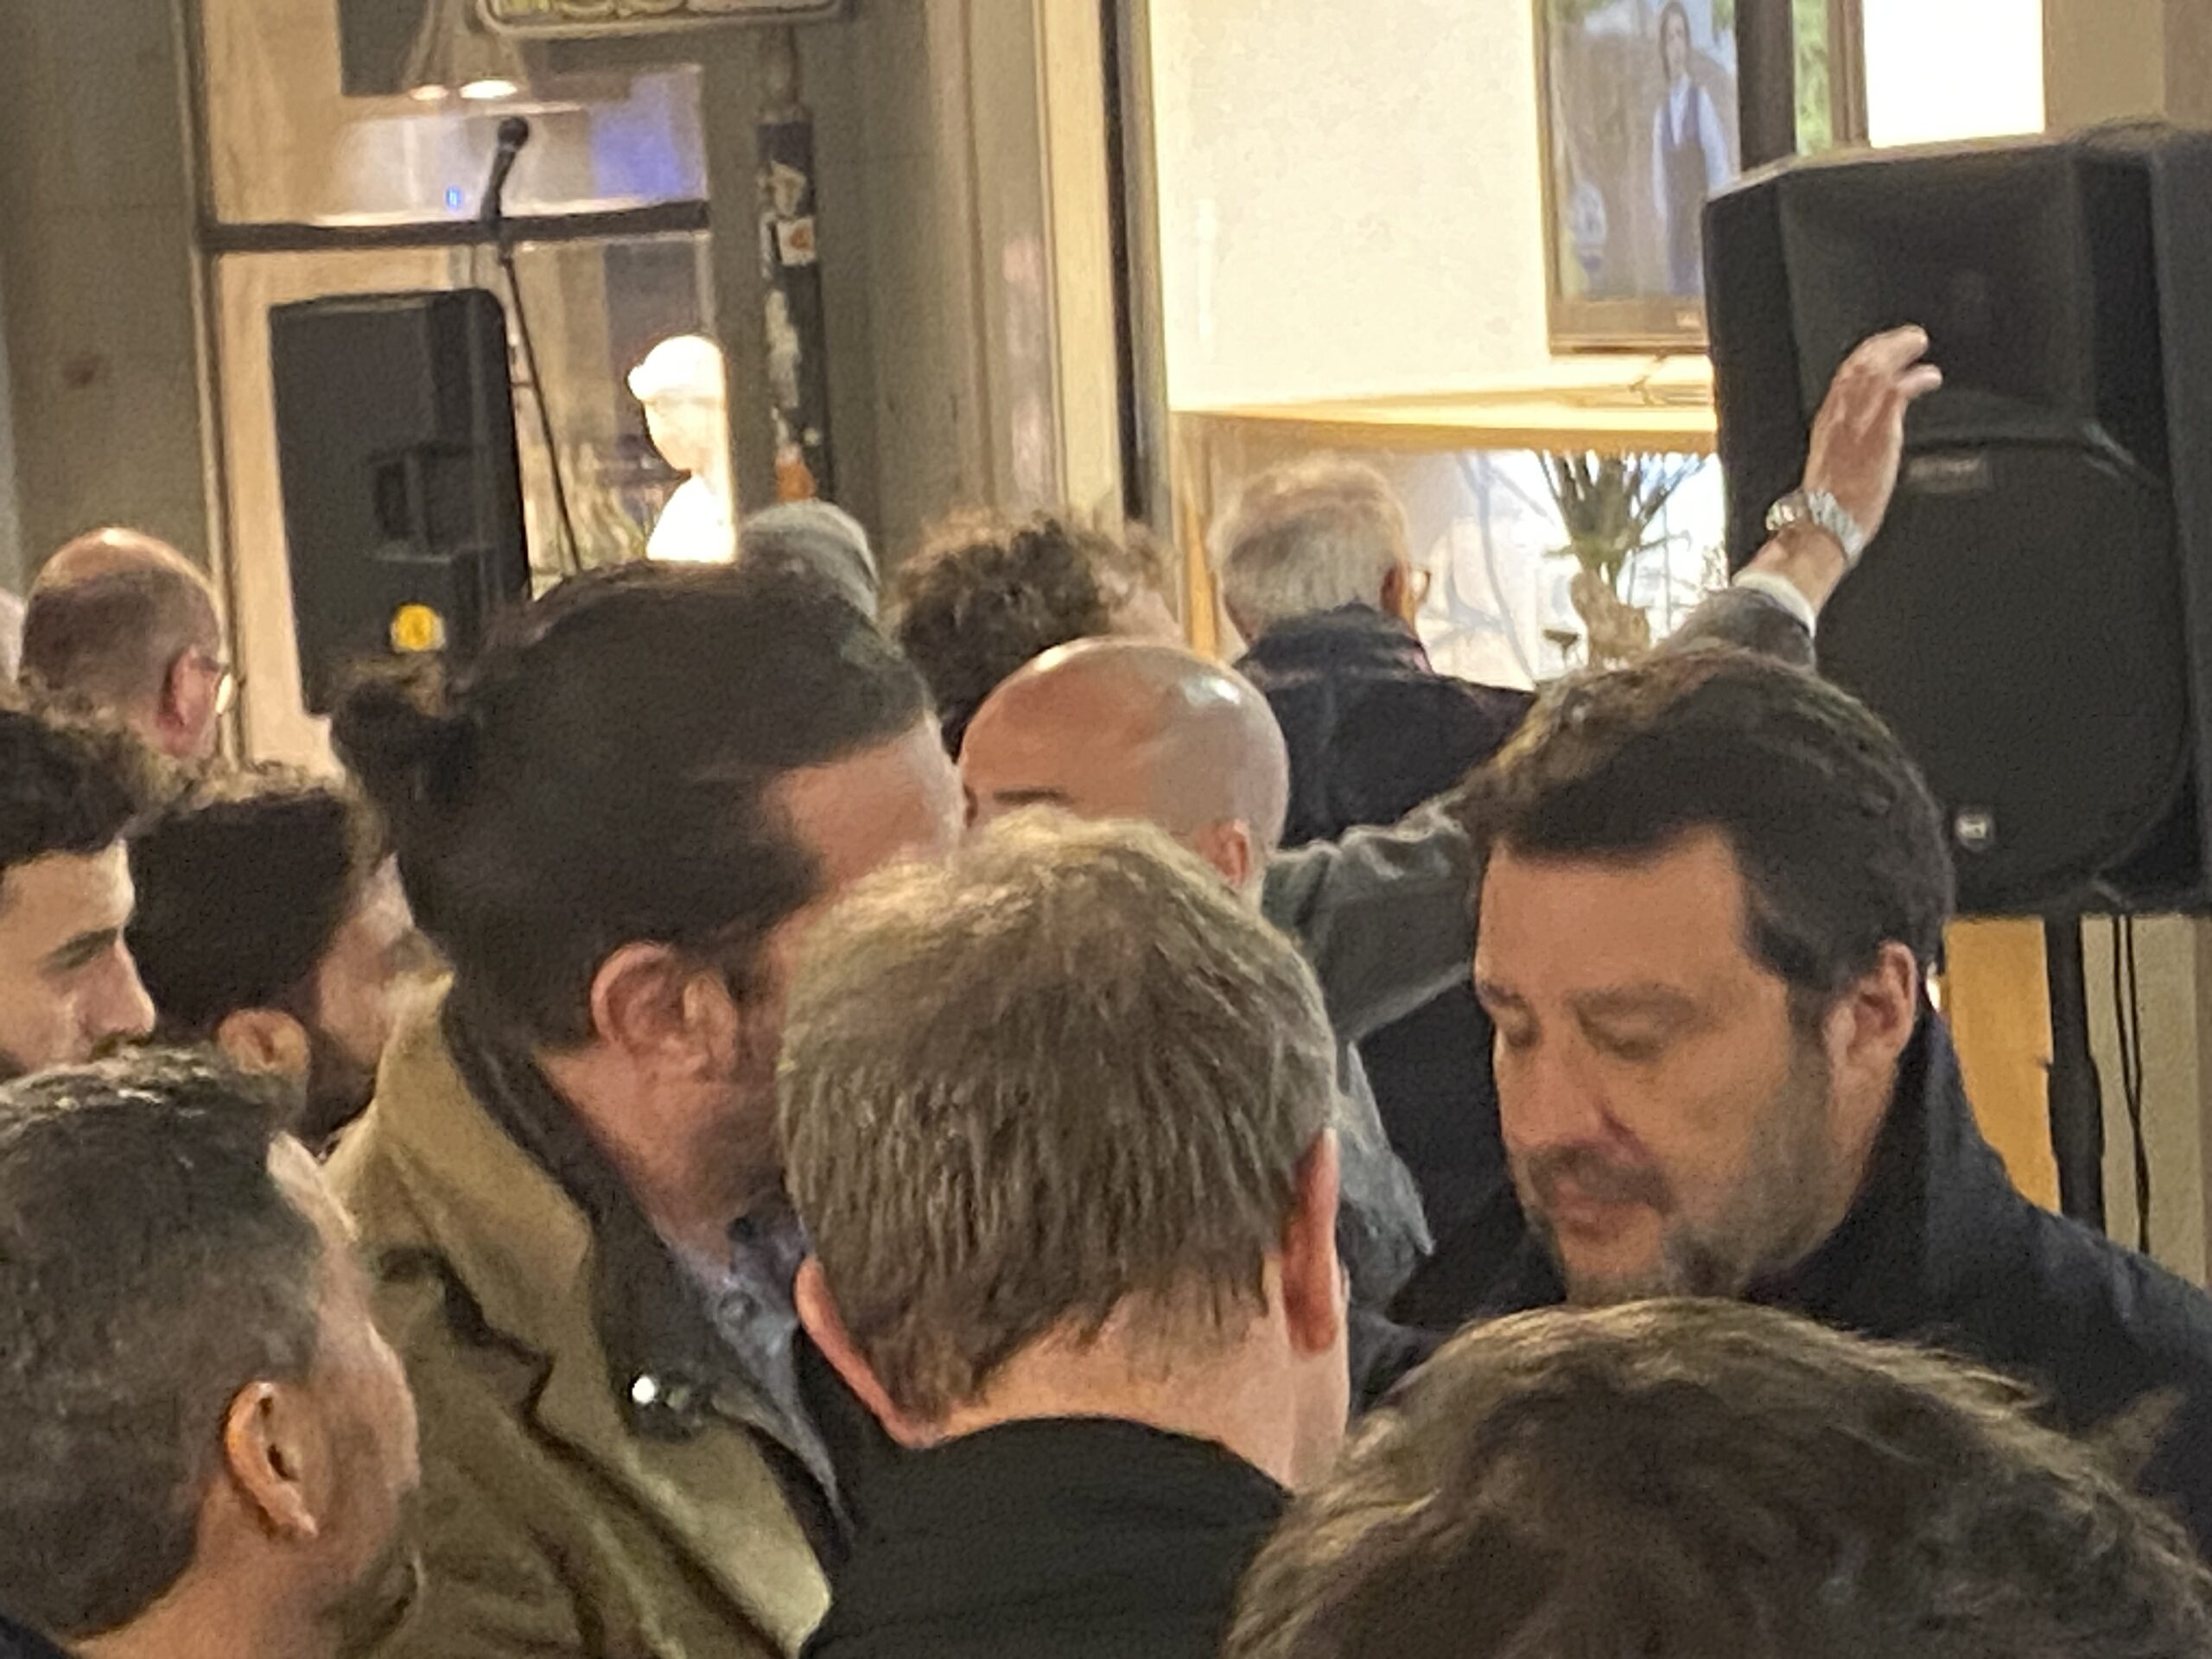 Luigi Ugone, Mario Zambon e altri collaboratori a colloquio con Matteo Salvini il 17 marzo al lancio di Rucco da parte della Lega